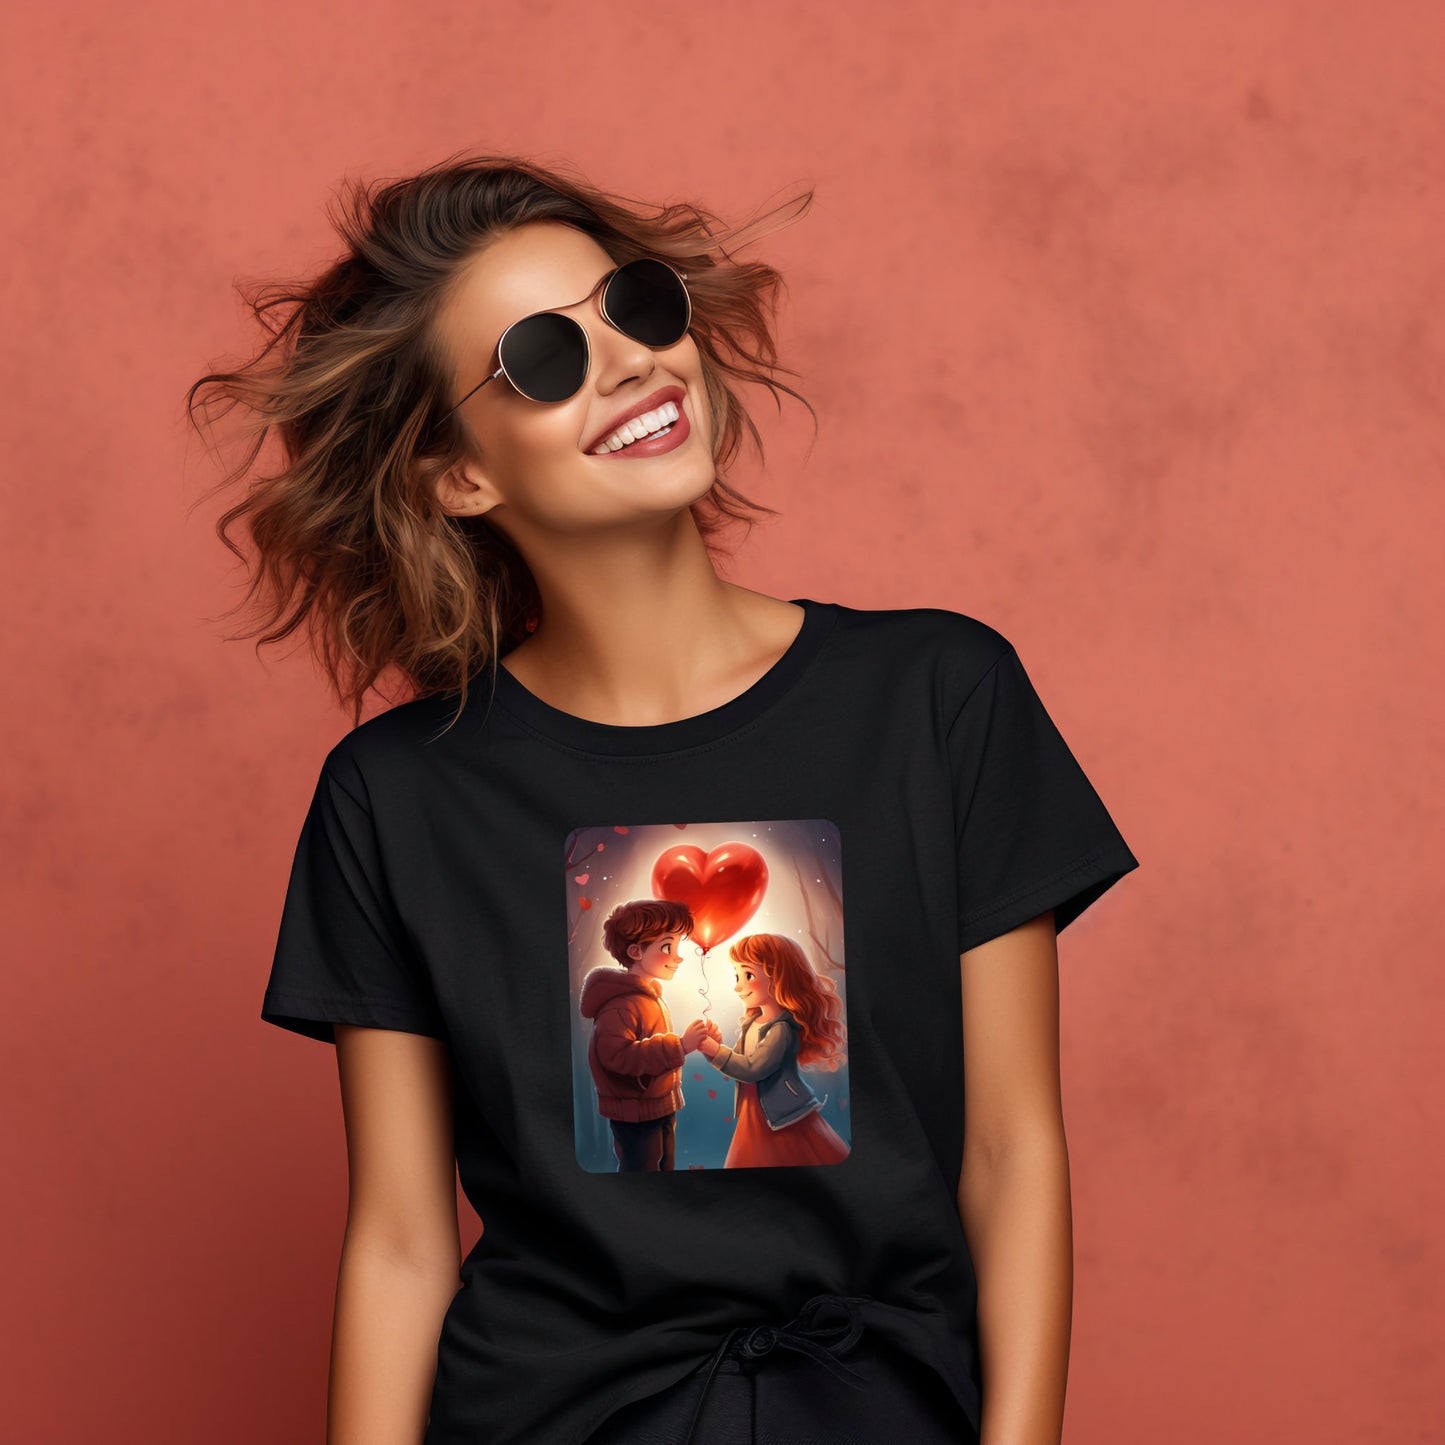 Moteriški marškinėliai "Girl & Boy" iš Designedbyme.lt su unikalaus dizaino piešiniu, atspindinčiu meilės subtilumą ir tyrumą - ideali dovana draugei ar gimtadienio proga. Moteriški marškinėliai, Visi produktai, ❤️ Valentino dienos kolekcija ❤️